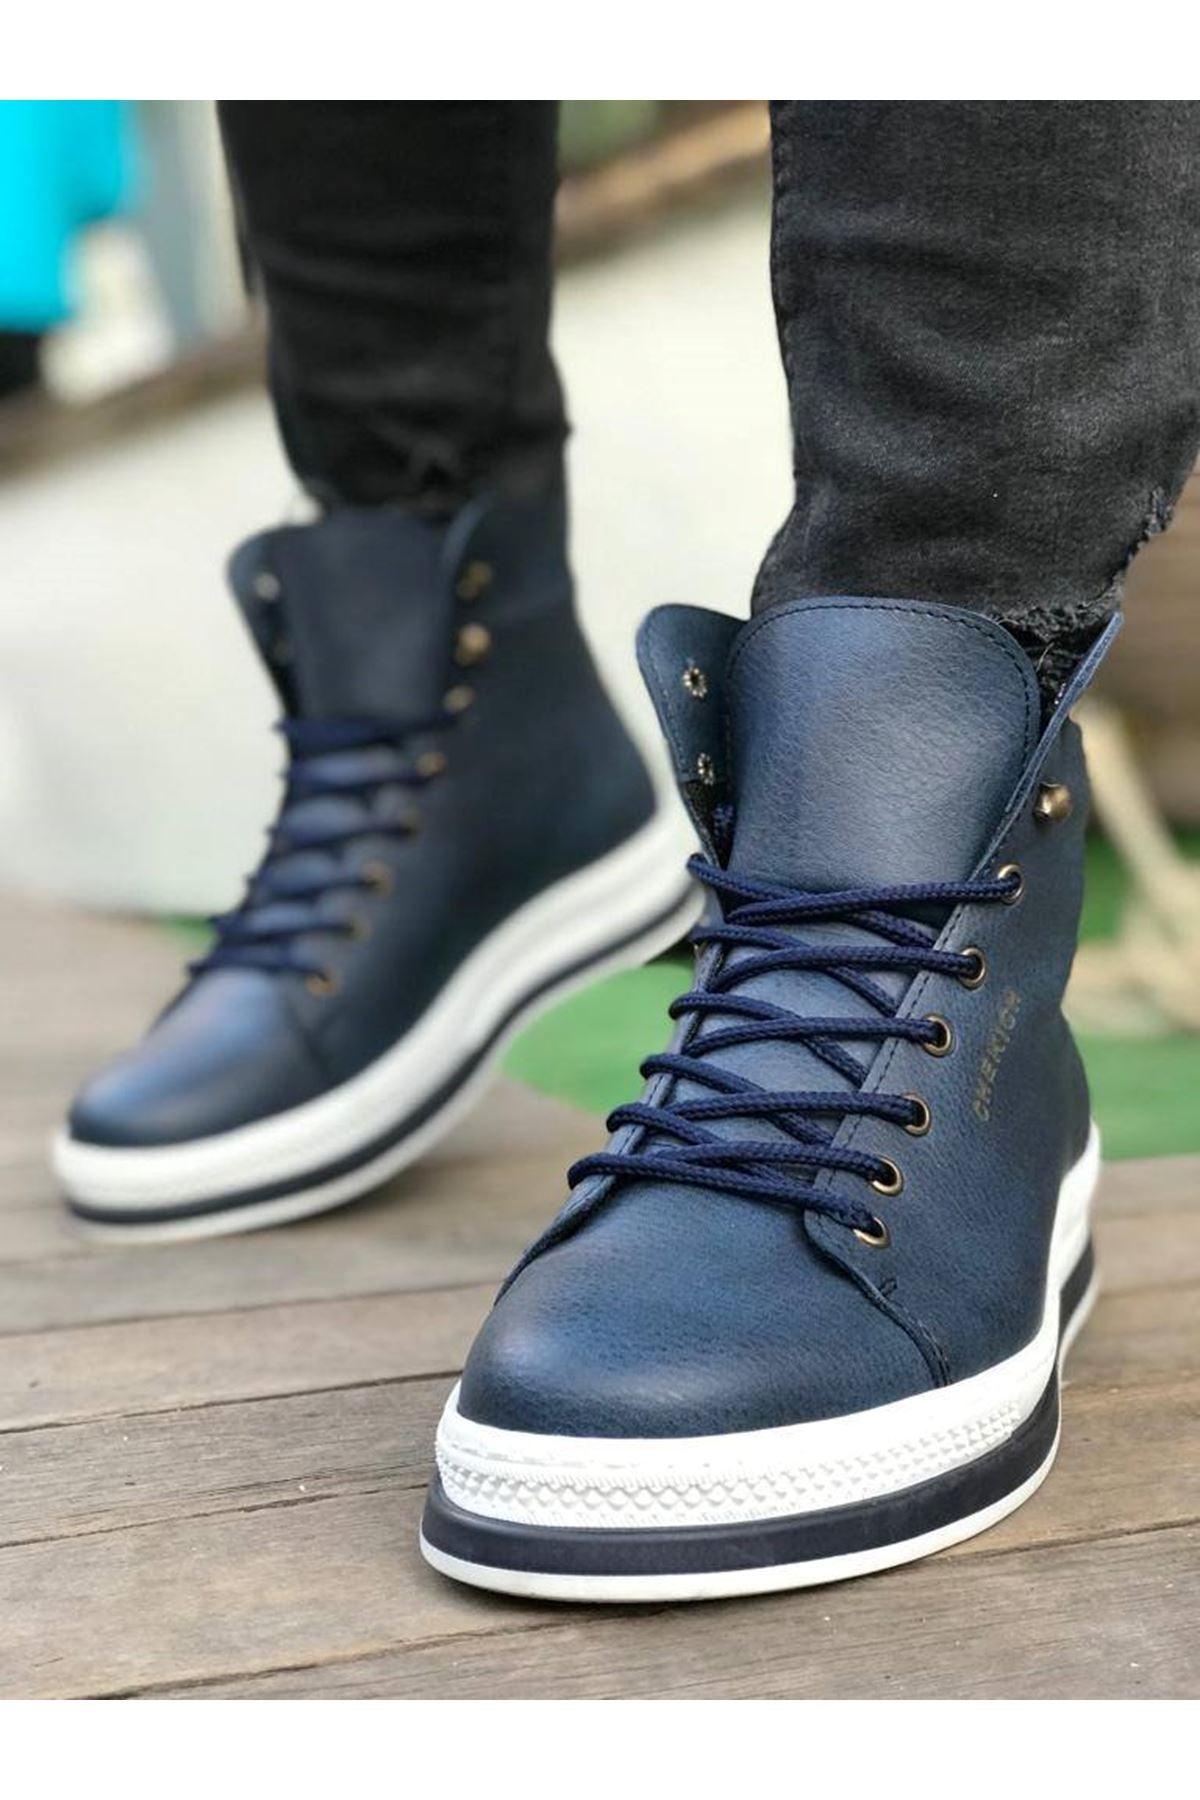 CH055 Mens Sneaker Boots - STREET MODE ™